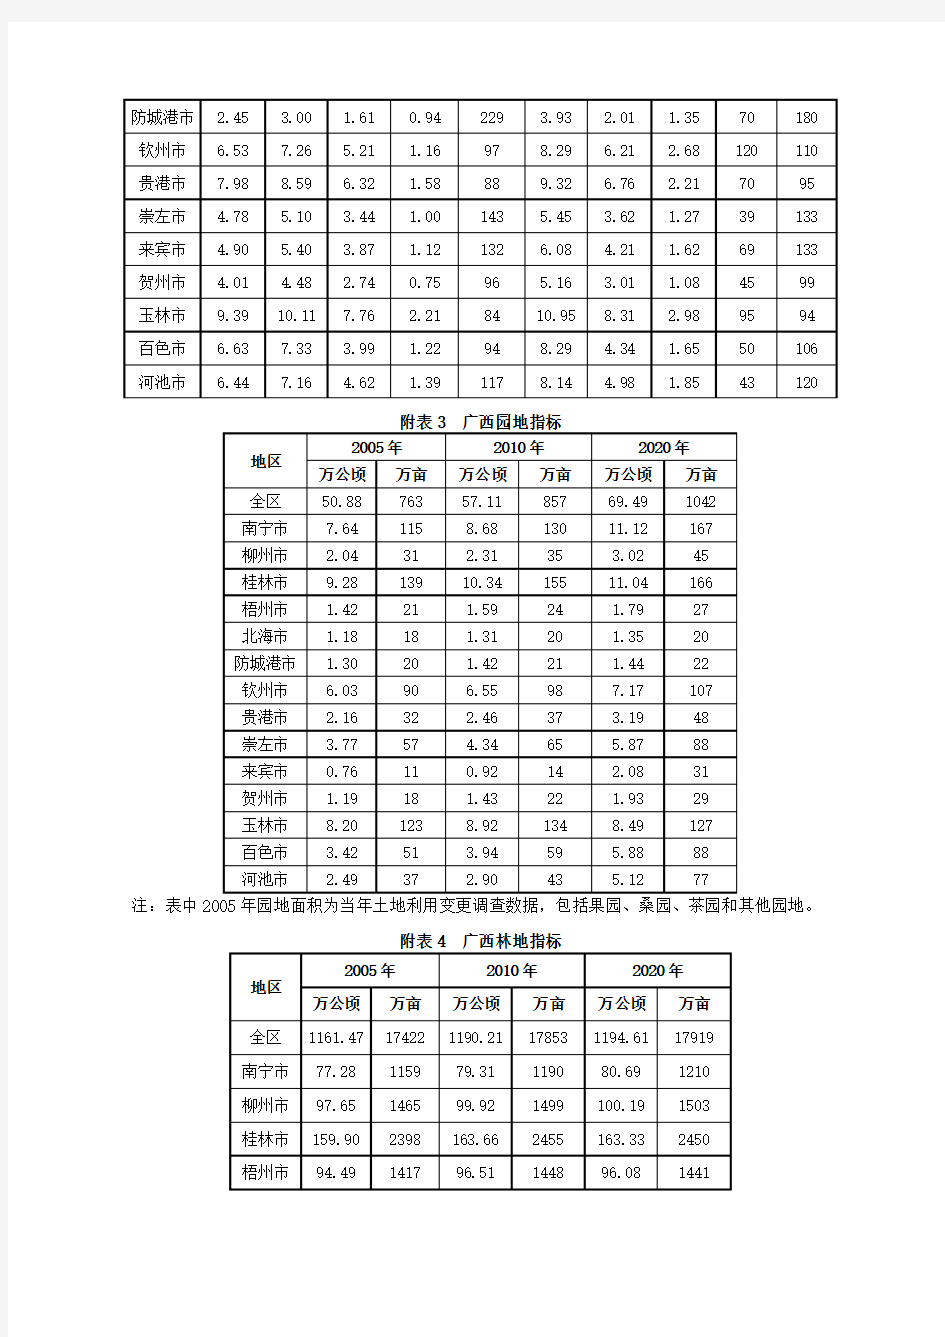 广西壮族自治区土地利用总体规划(2006～2020年)相关附表